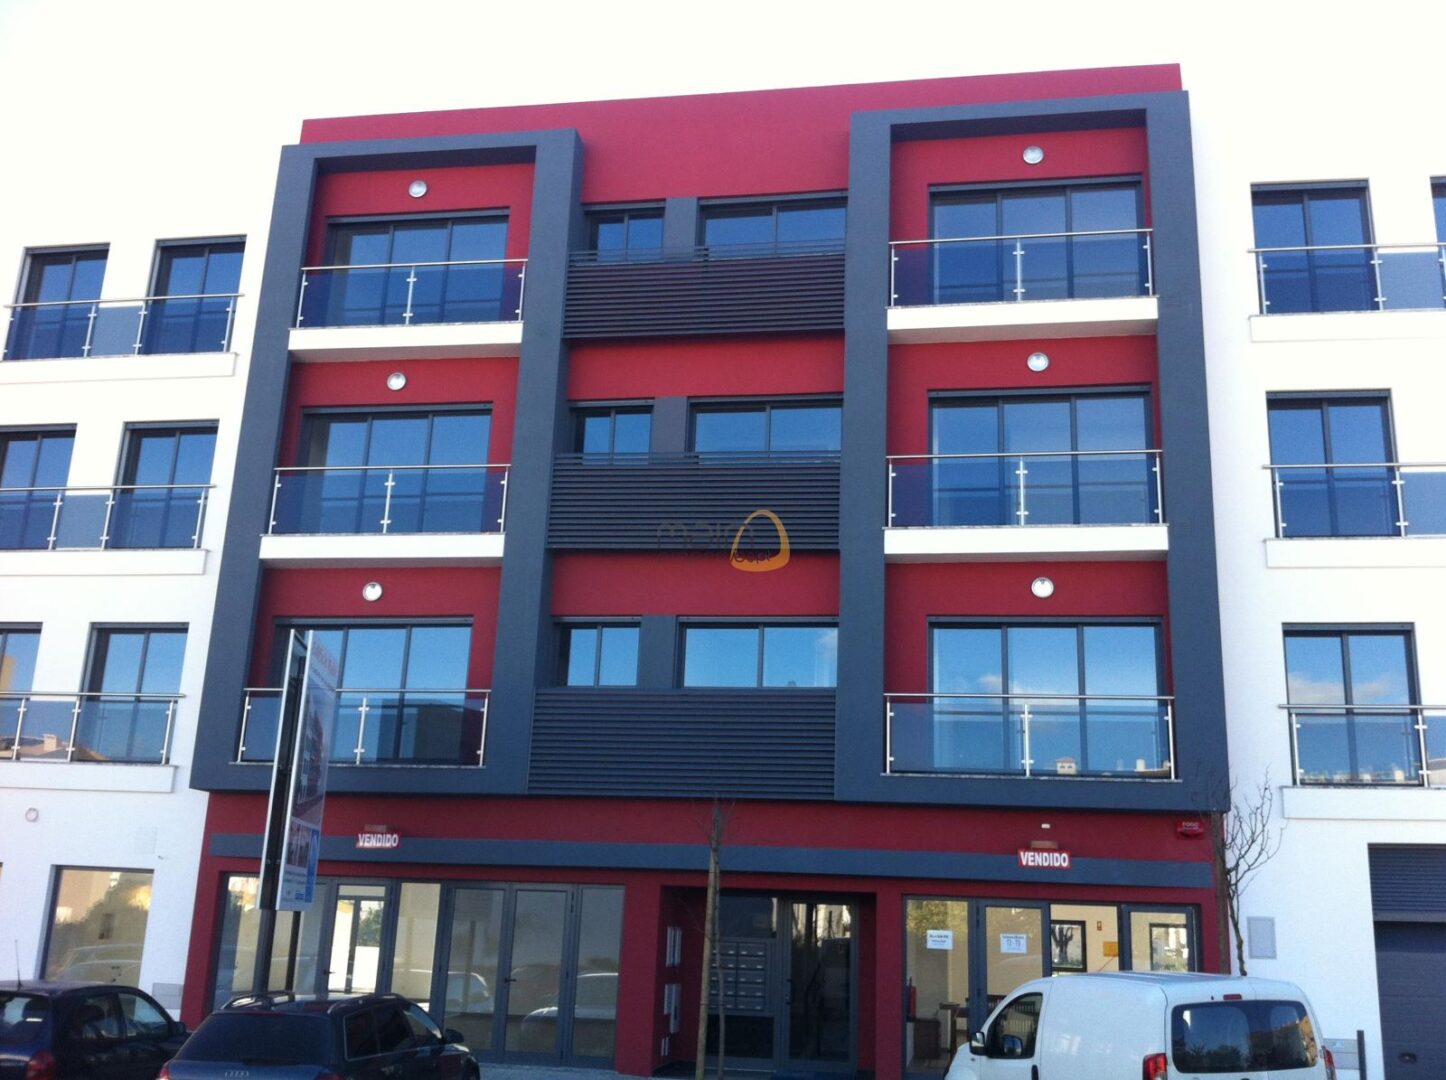 Investimento - Lote para prédio com 8 apartamentos em Almancil RF135_PP1